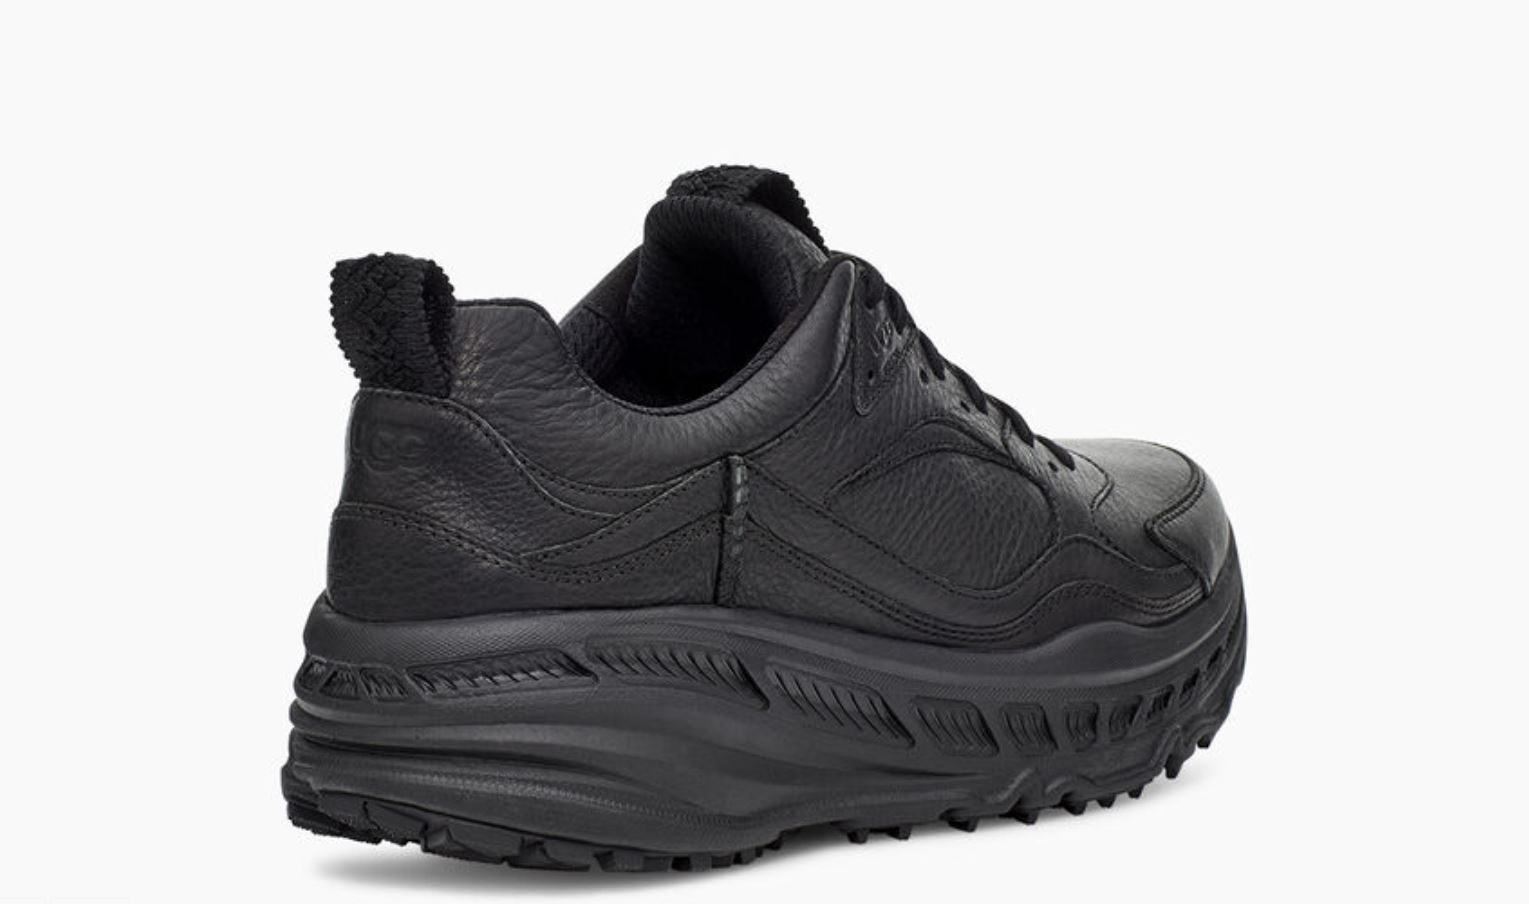 UGG CA805 × Lace Low Sneaker “12x12” (アグ CA805 × レース ロー スニーカー “12x12”) 1117495-red, 1118050-wht, 1117495-blk